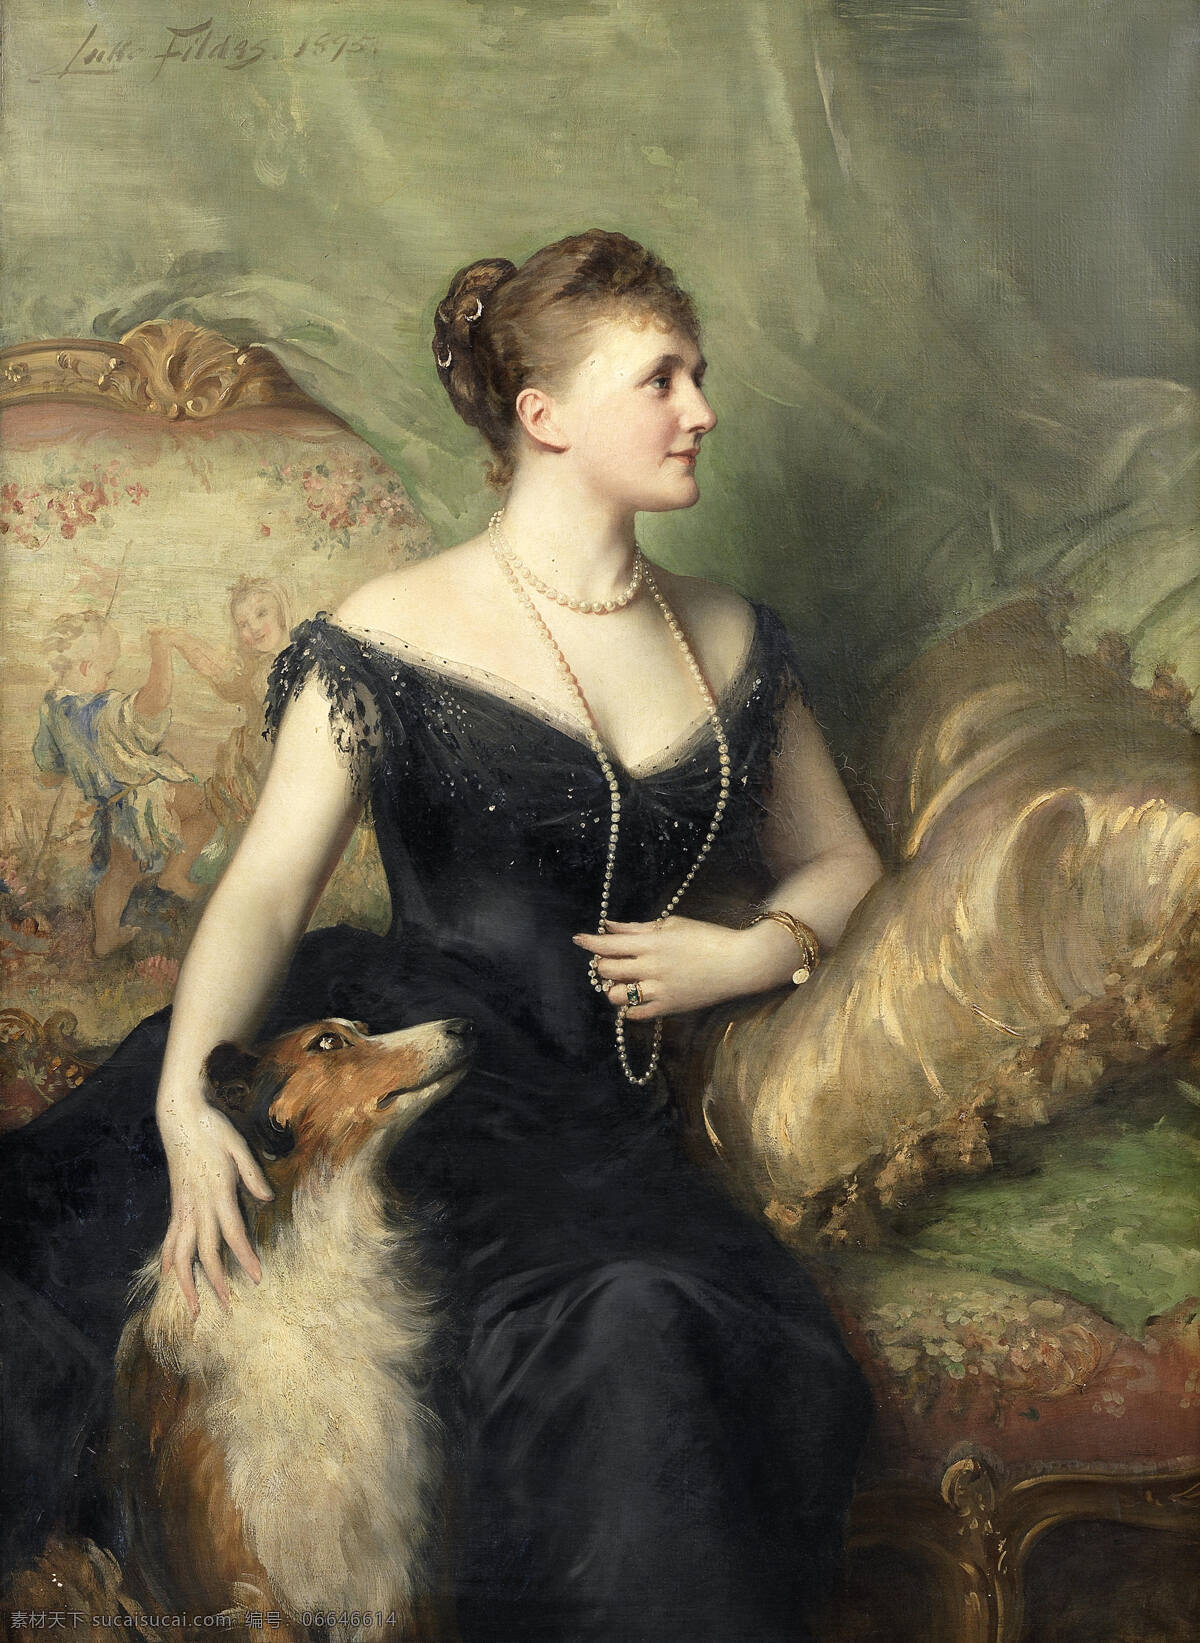 贵妇人与狗 苏格兰牧羊犬 贵族妇人 坐像 珍珠项链 19世纪油画 油画 绘画书法 文化艺术